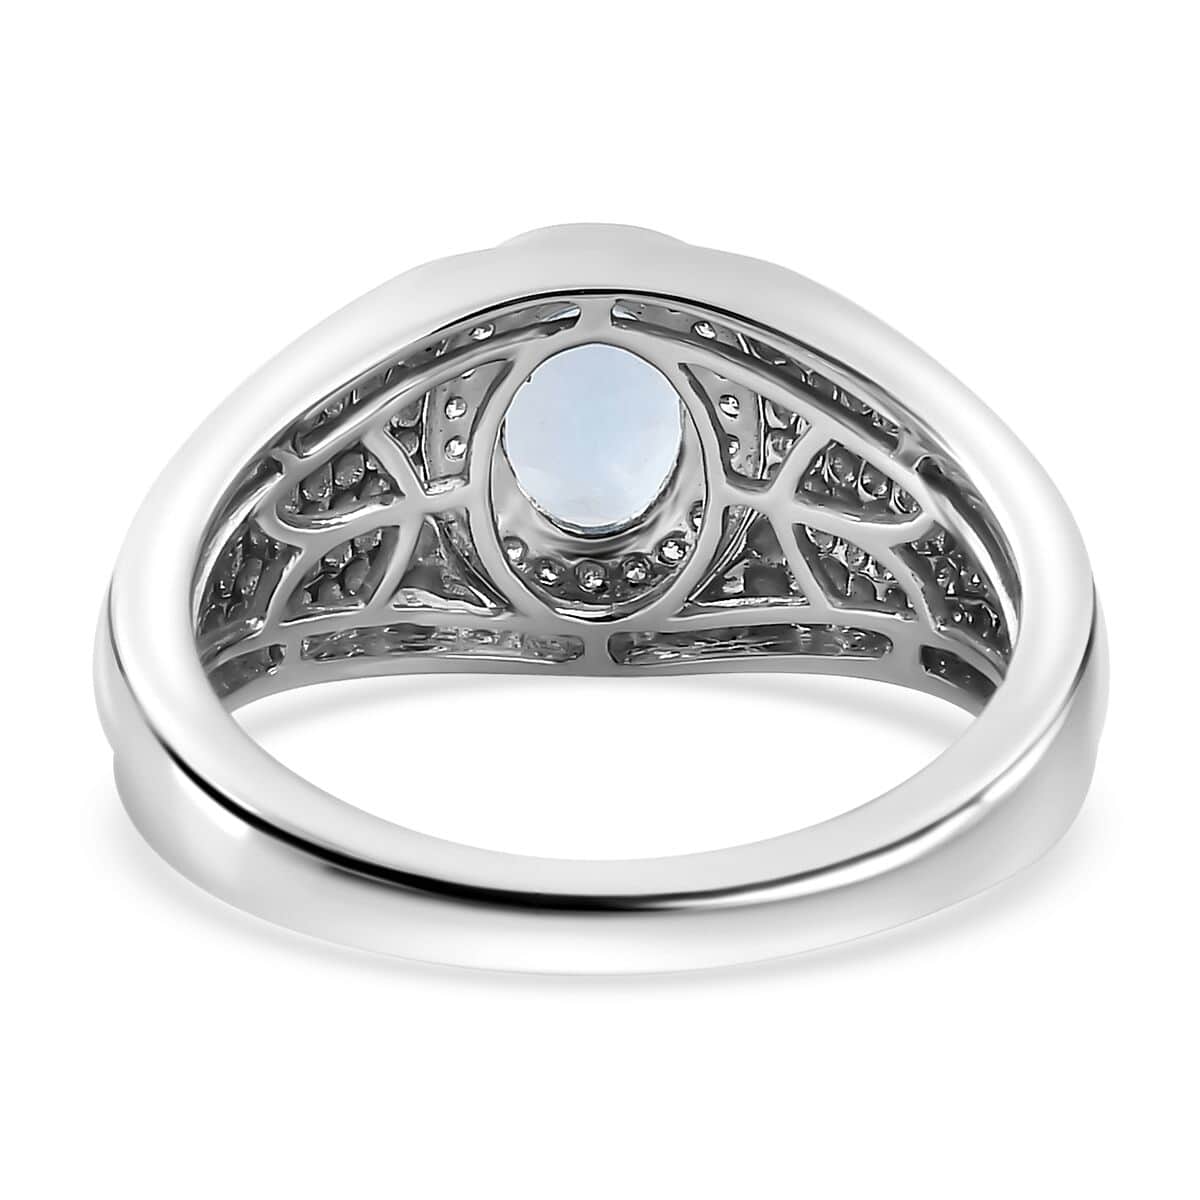 Luxoro 10K White Gold Premium Santa Maria Aquamarine and G-H I2 Diamond Men's Ring (Size 10.0) 6.15 Grams 1.20 ctw image number 4